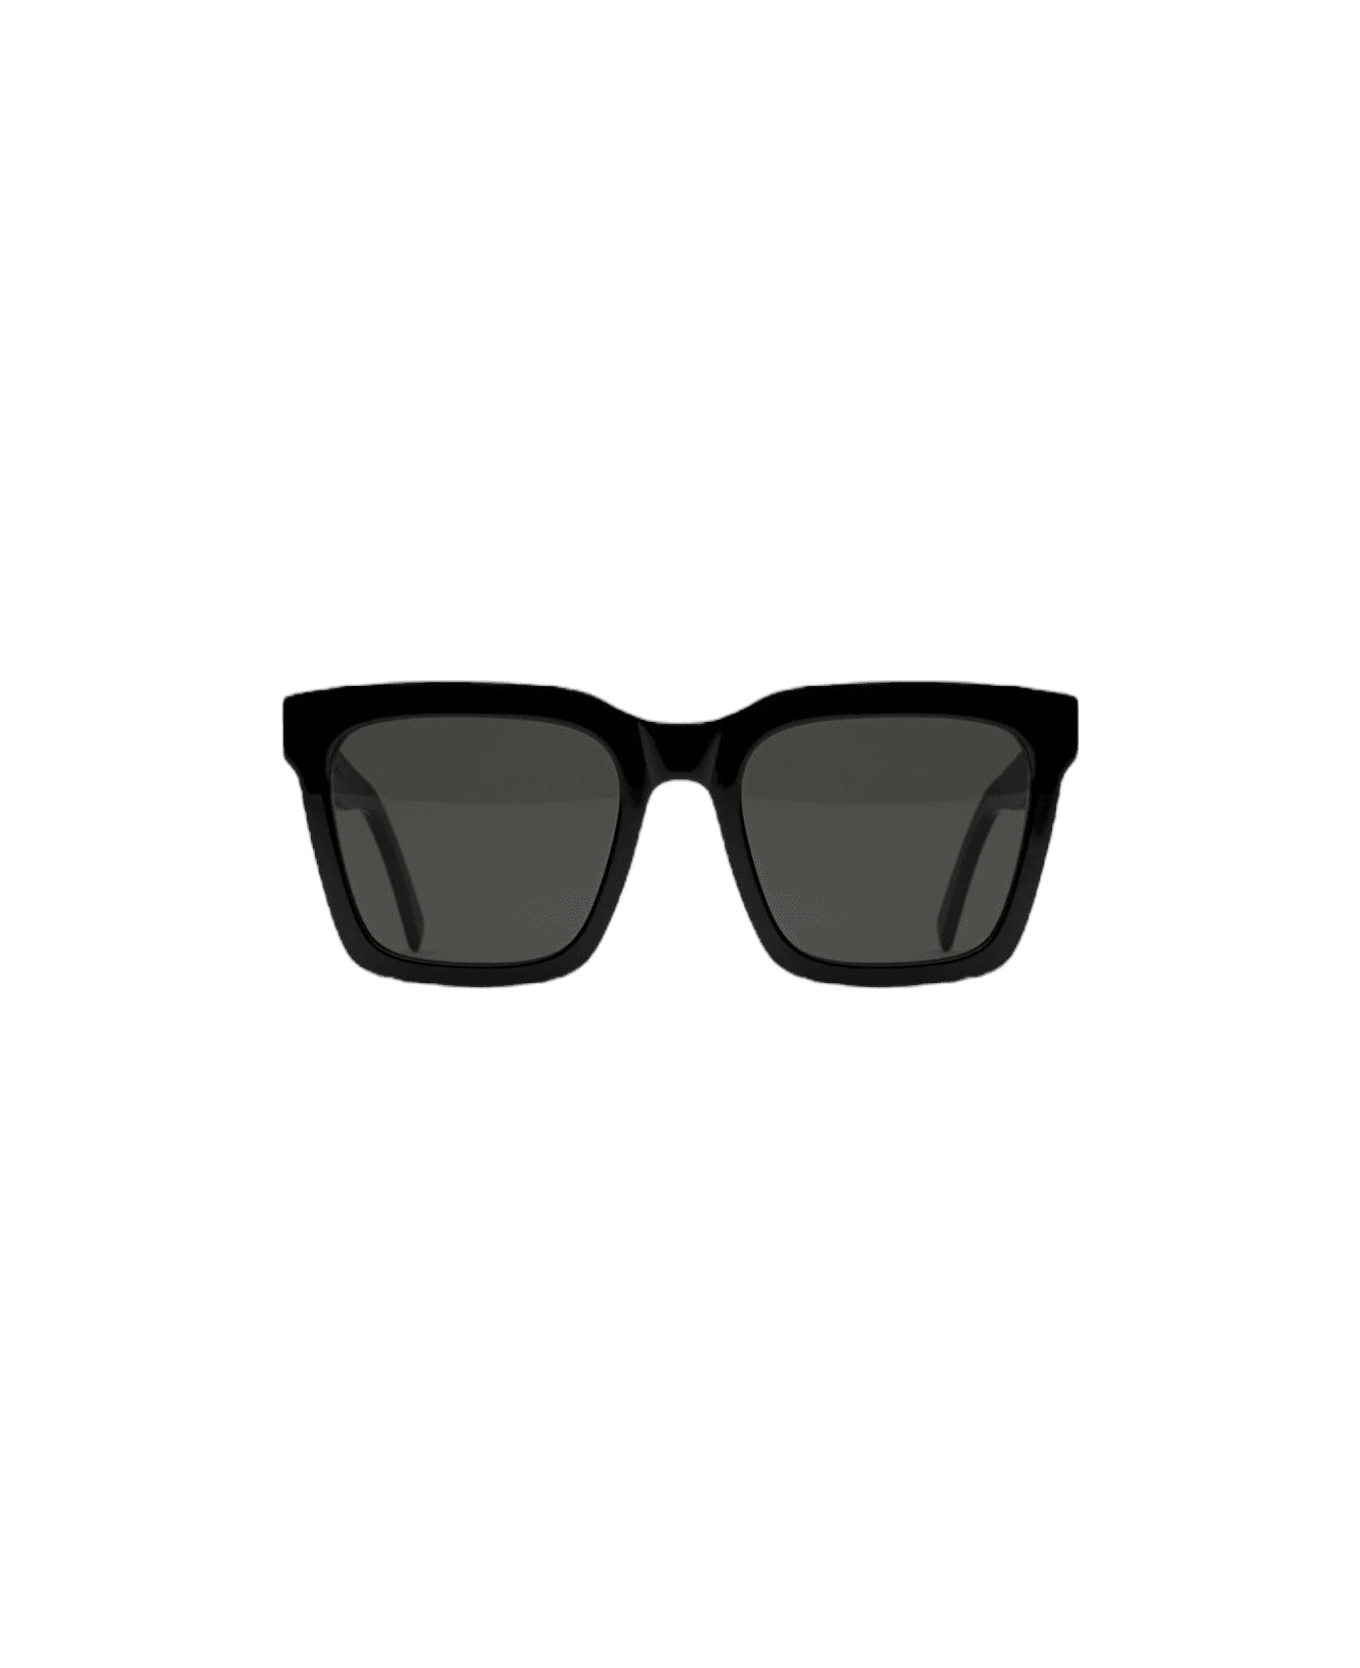 RETROSUPERFUTURE Aalto - Black Sunglasses サングラス